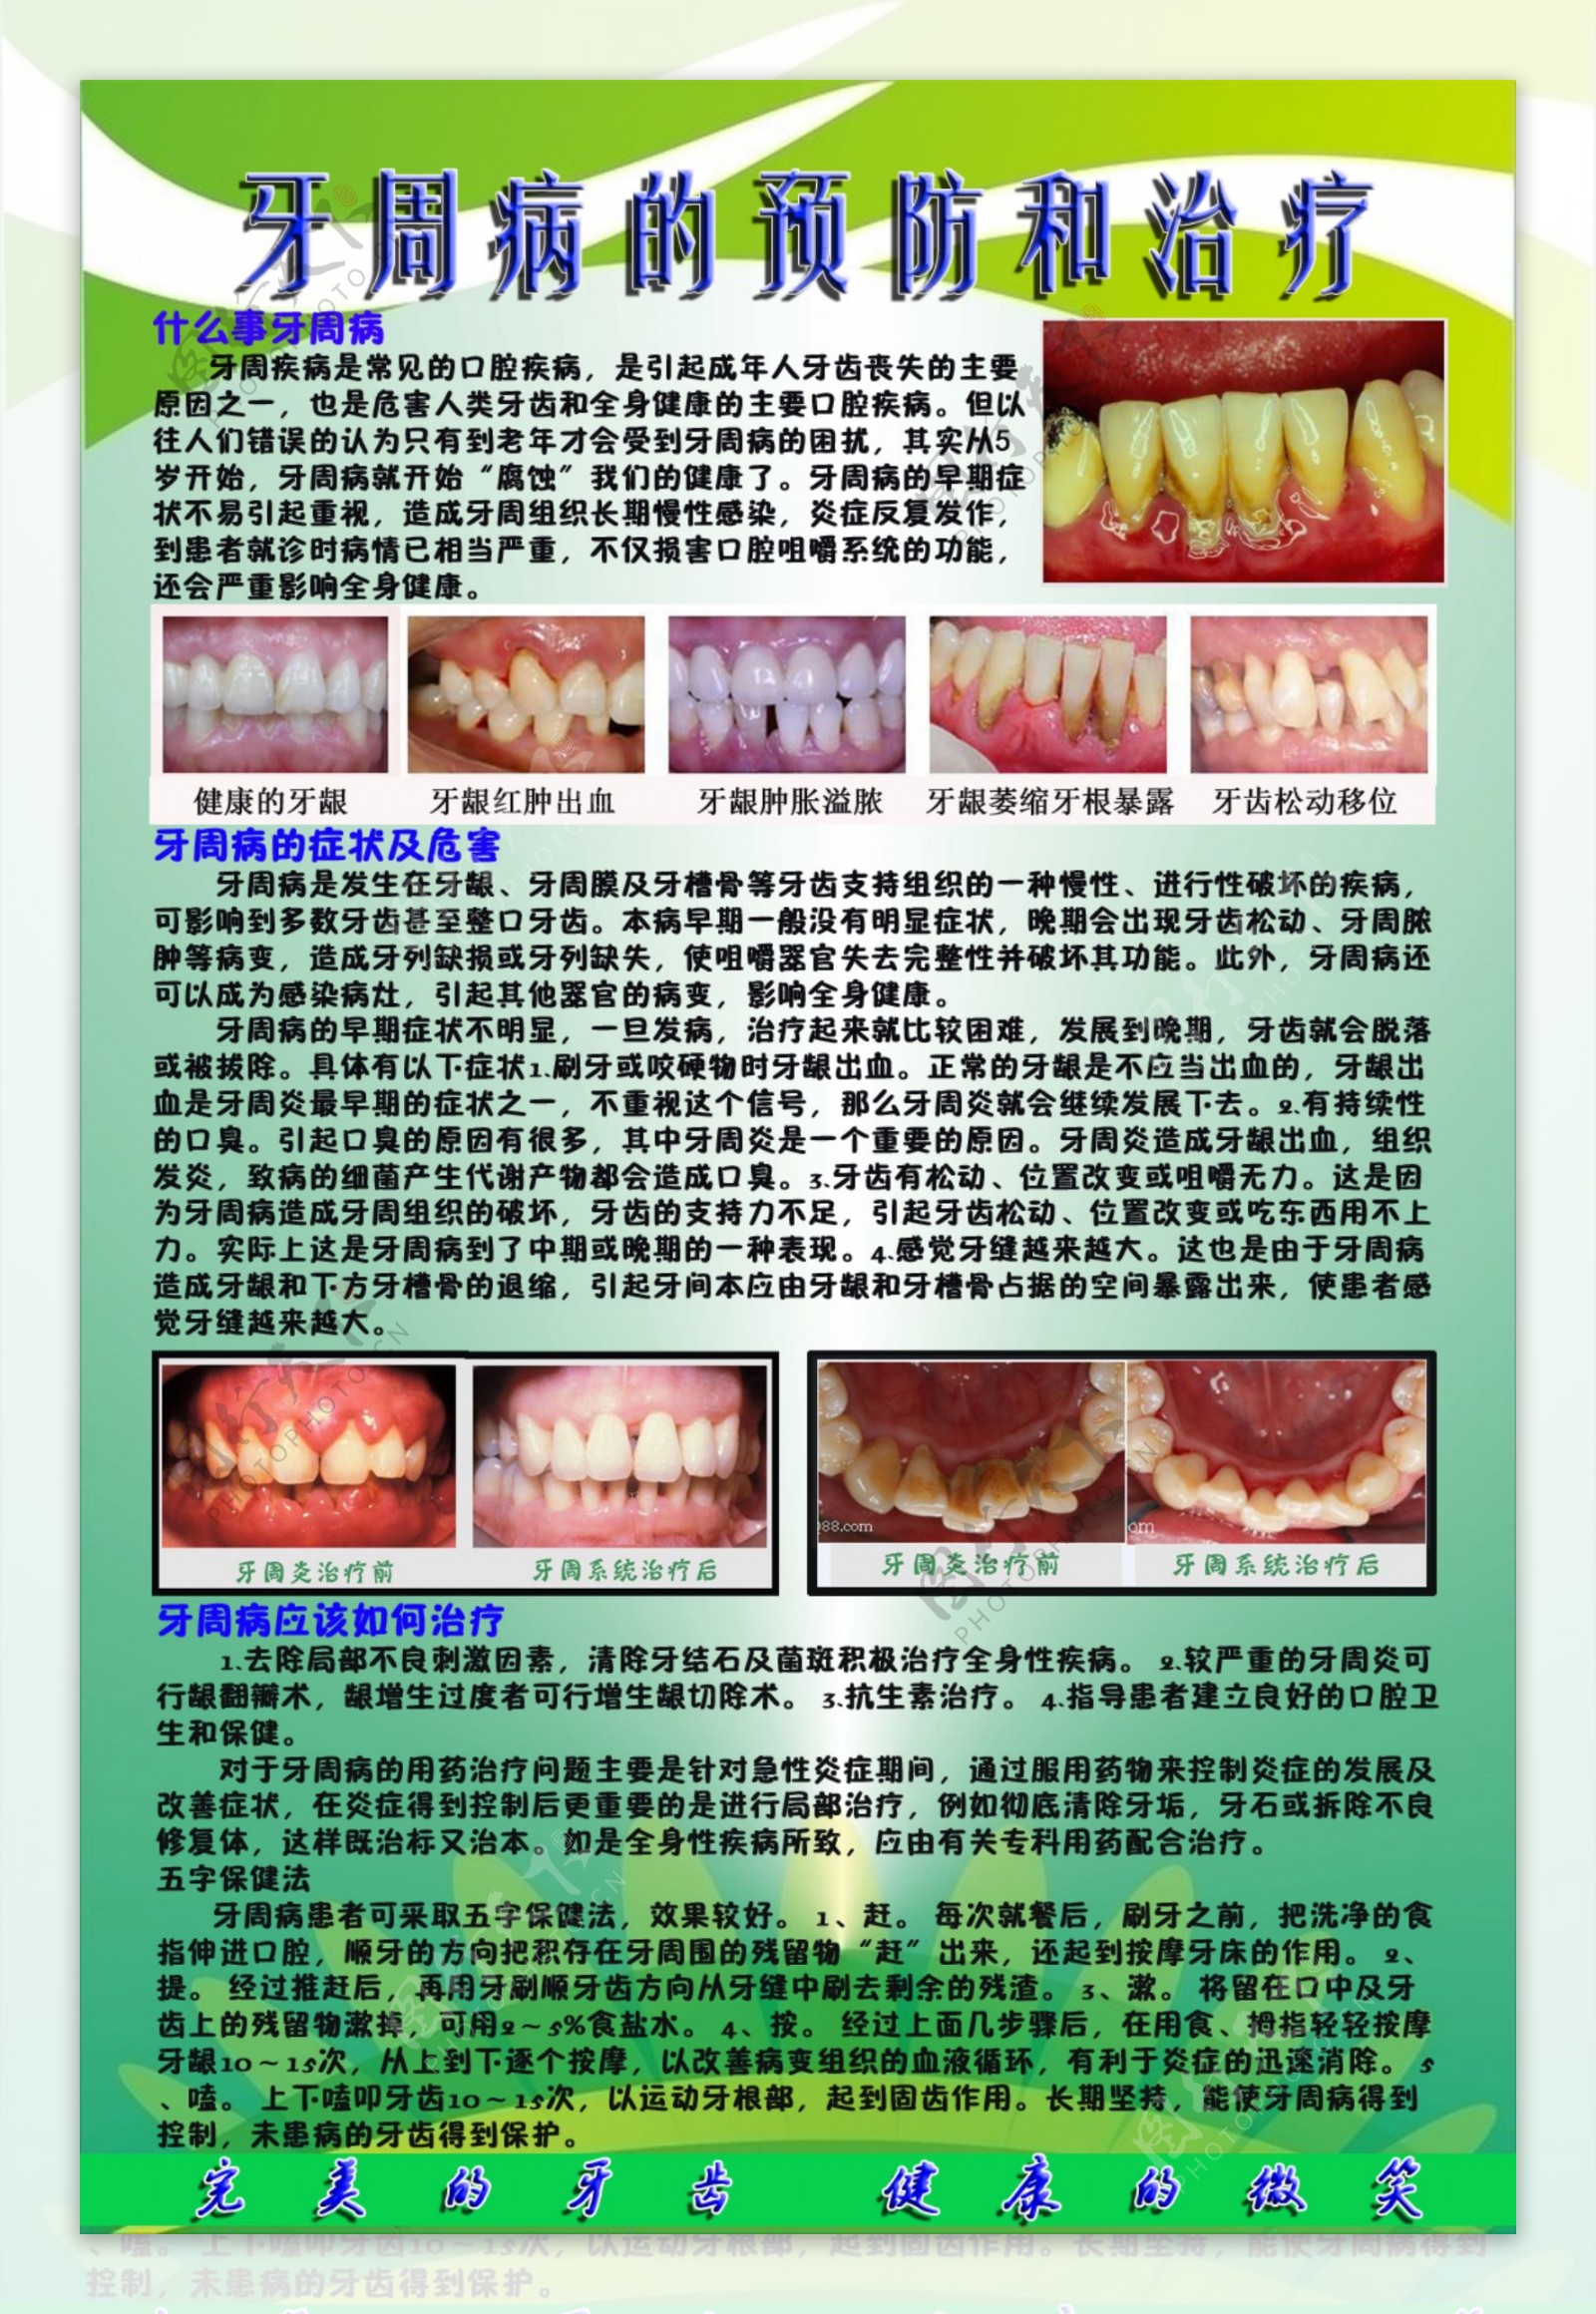 牙周病 | 牙周病症狀及治療方法 | 卓健醫療